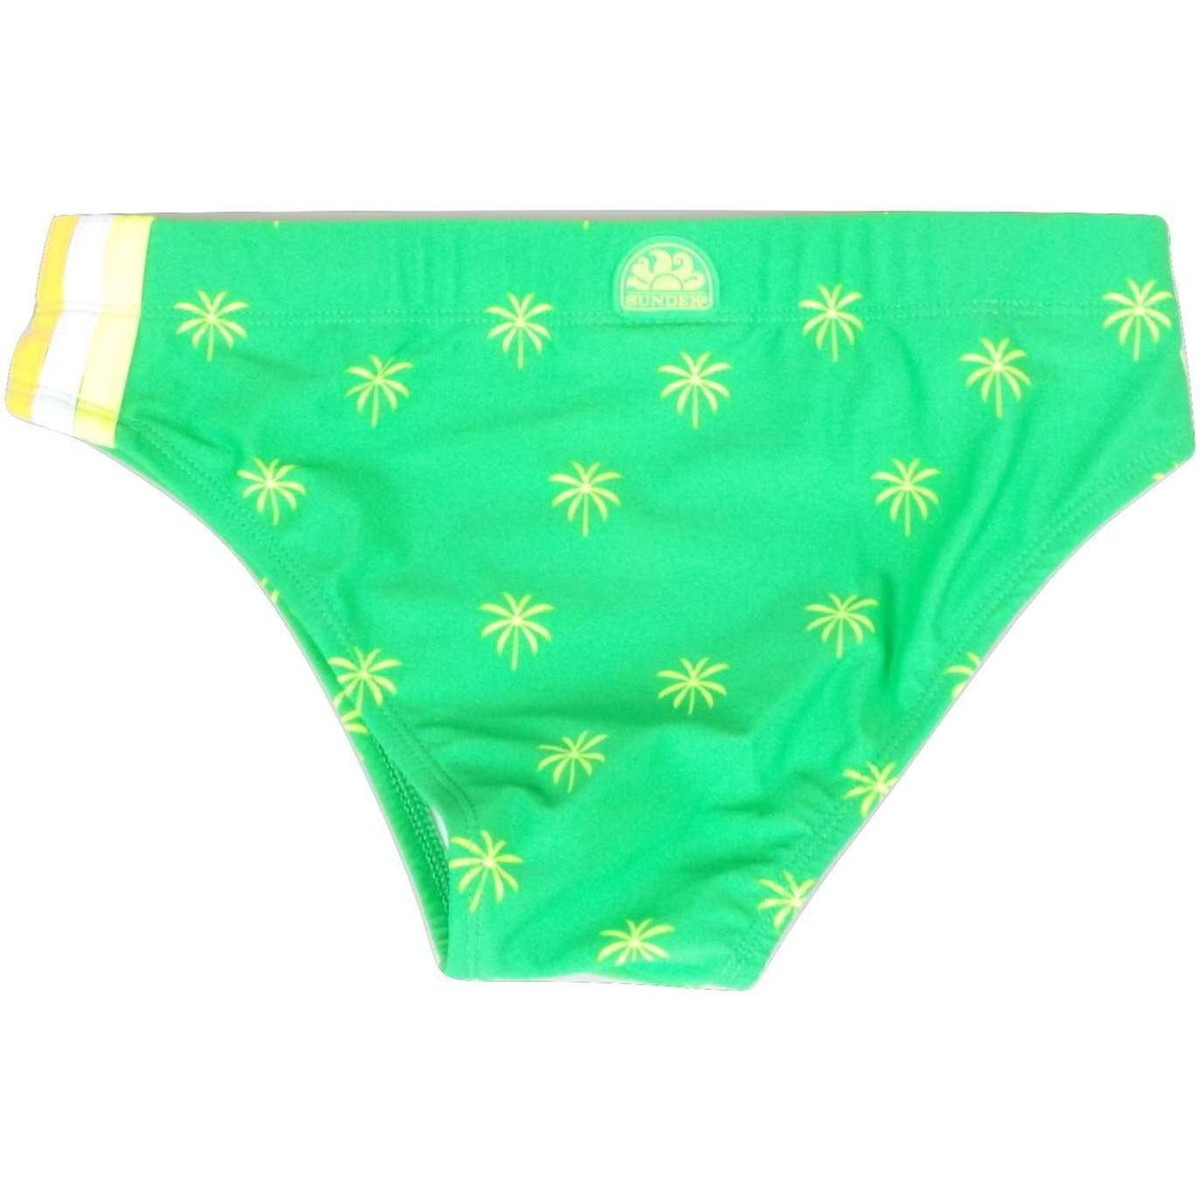 Abbigliamento Bambino Costume / Bermuda da spiaggia Sundek B202SSL30PM 280 Slip Mare Bambino Bambino Verde Verde